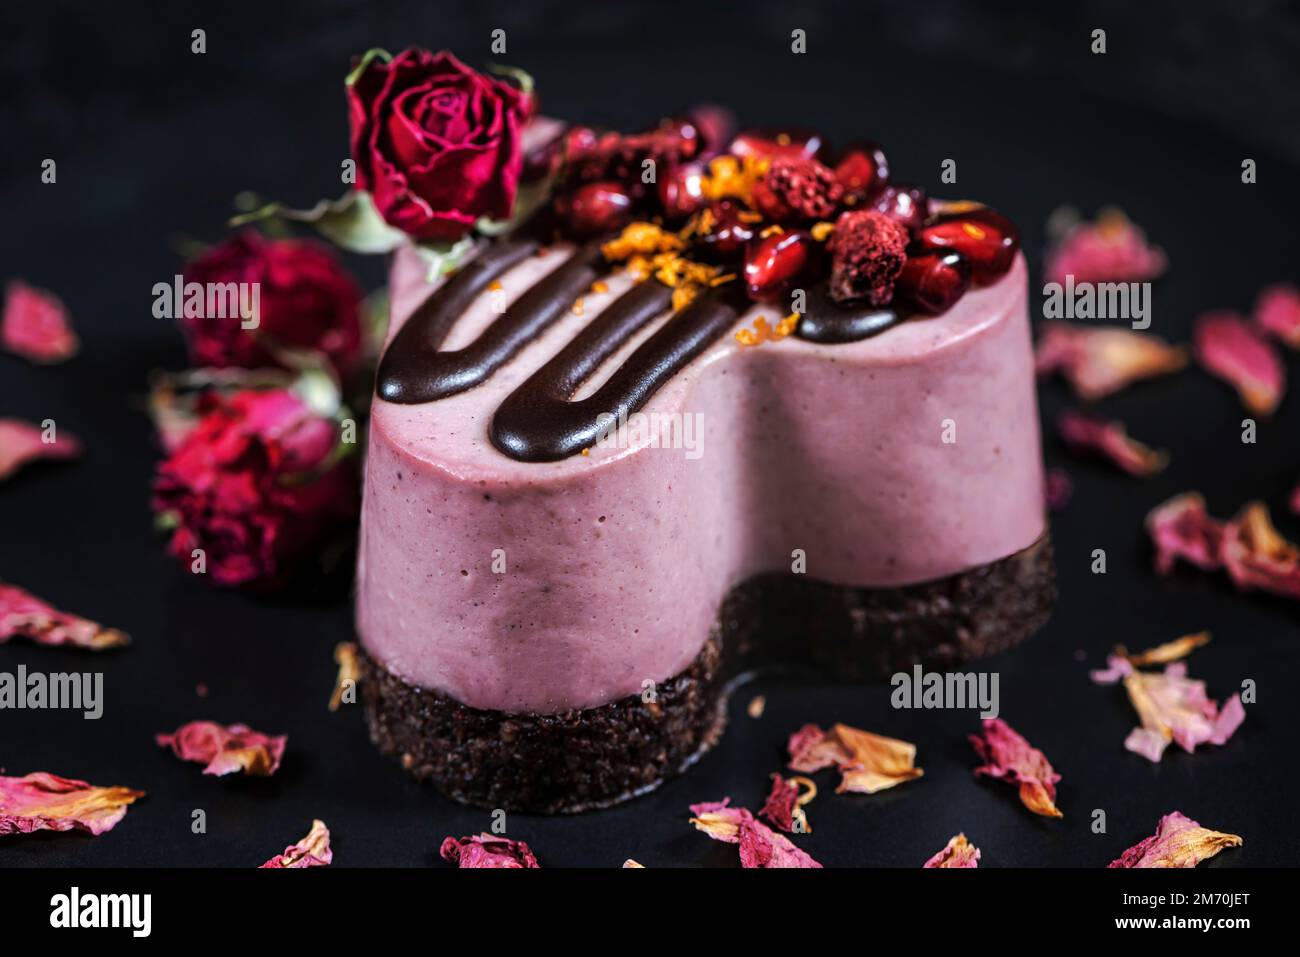 Gâteau au coeur décoré de grenade et de fraises. Dessert sur une assiette noire avec roses. Banque D'Images